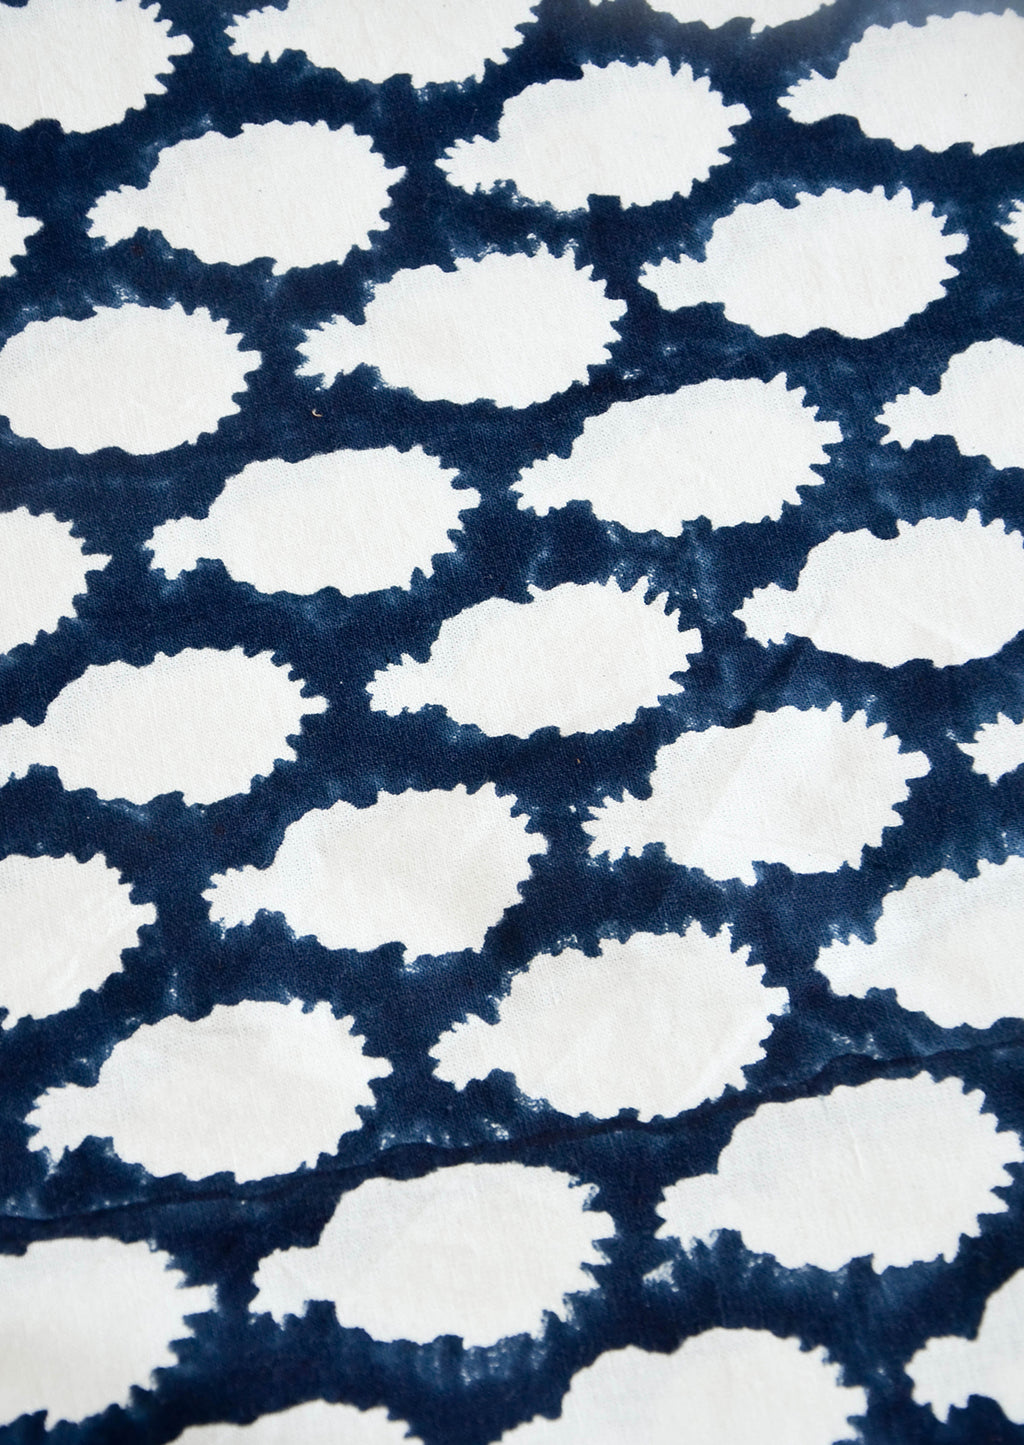 2: Indigo fabric with batik design in white